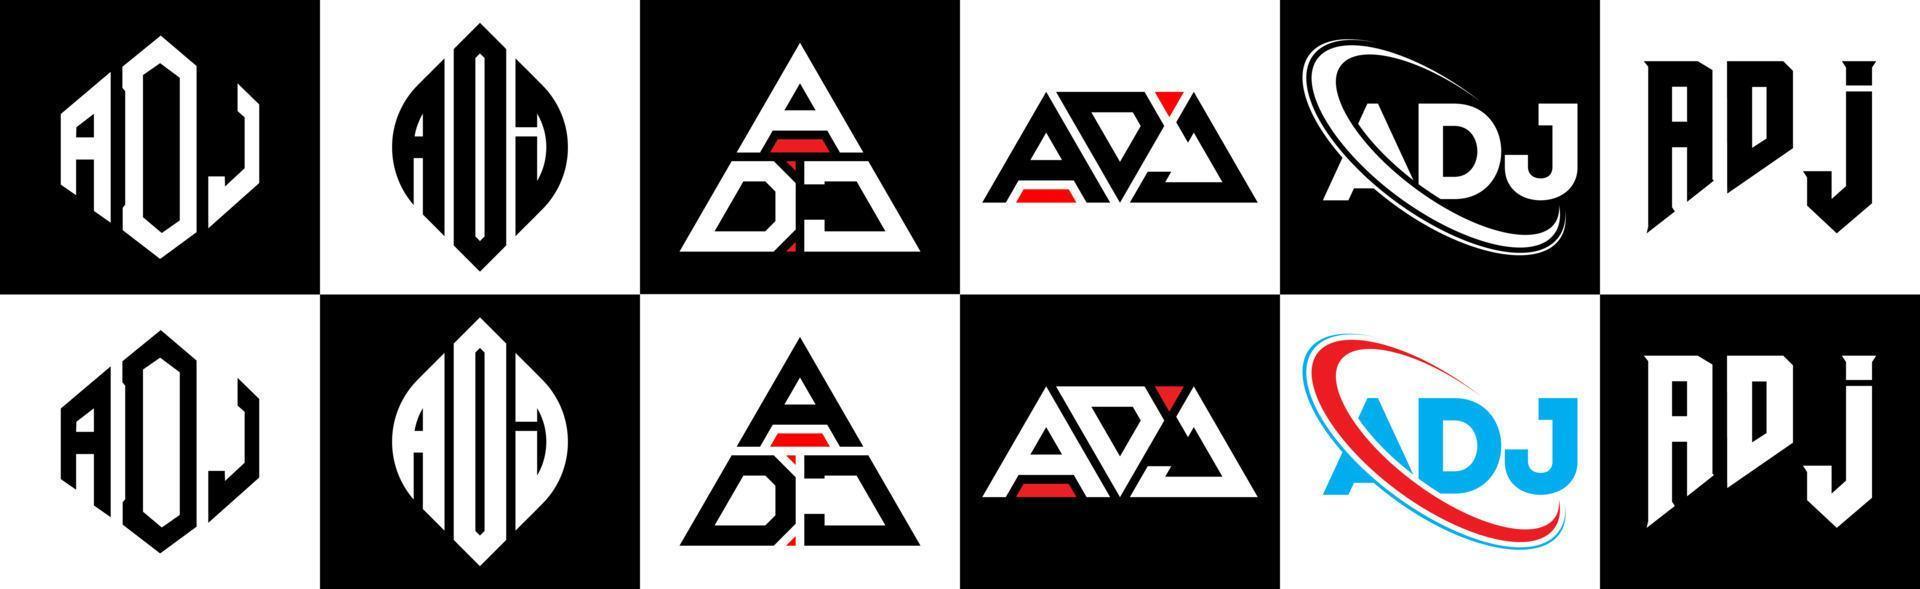 création de logo de lettre adj en six styles. polygone adj, cercle, triangle, hexagone, style plat et simple avec logo de lettre de variation de couleur noir et blanc dans un plan de travail. adj logo minimaliste et classique vecteur